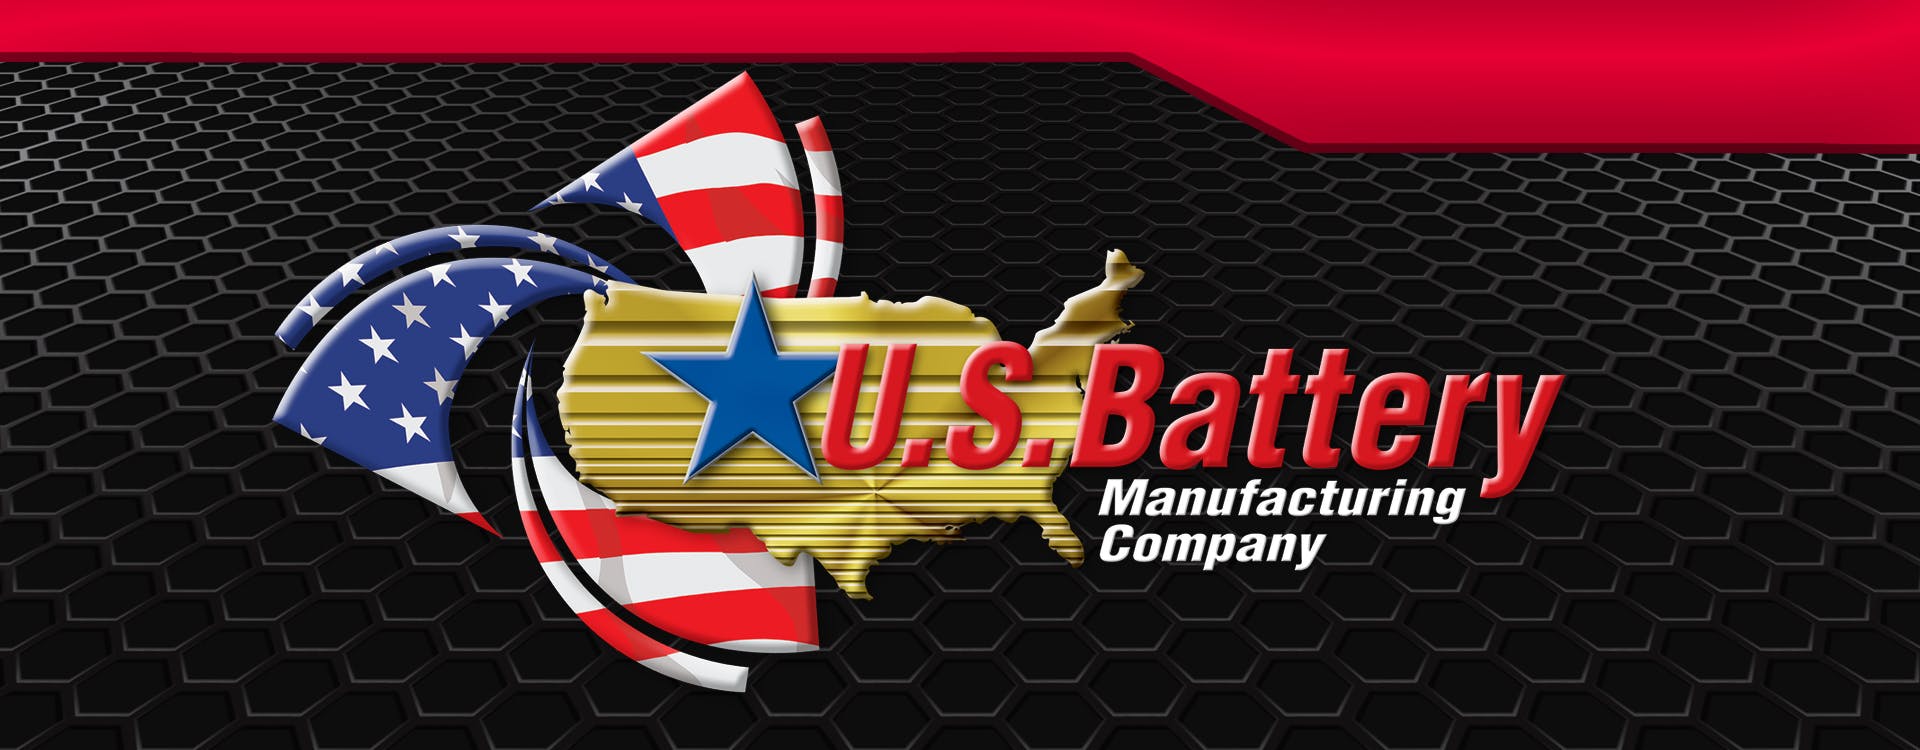 Company logo for 'US Battery'.